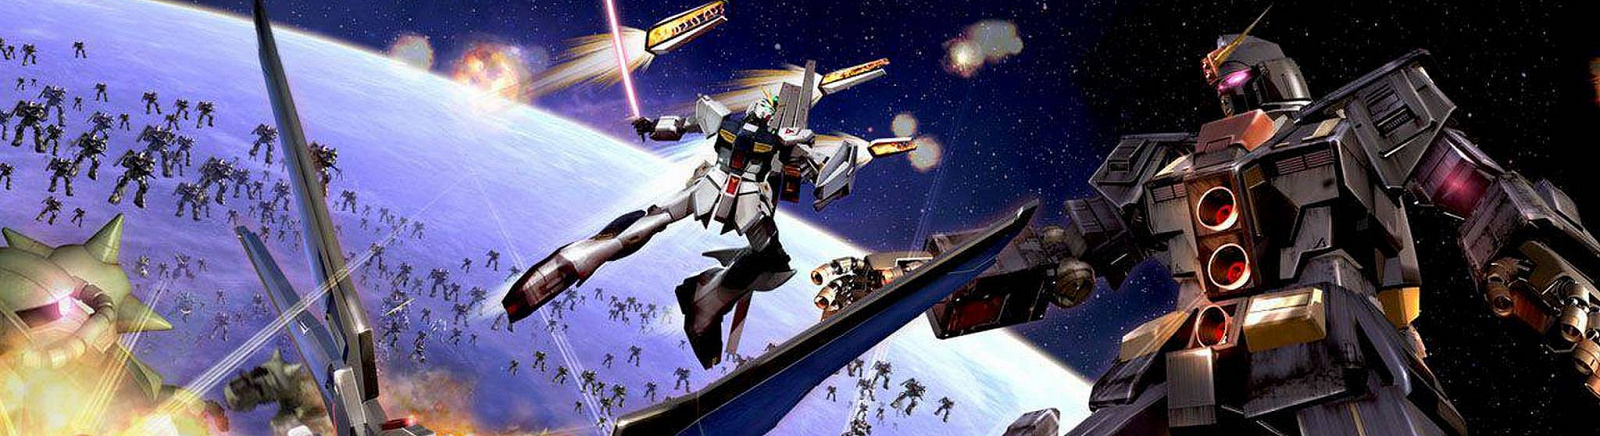 Дата выхода Dynasty Warriors: Gundam 2 (Gundam Musou 2)  на PS3, PS2 и Xbox 360 в России и во всем мире